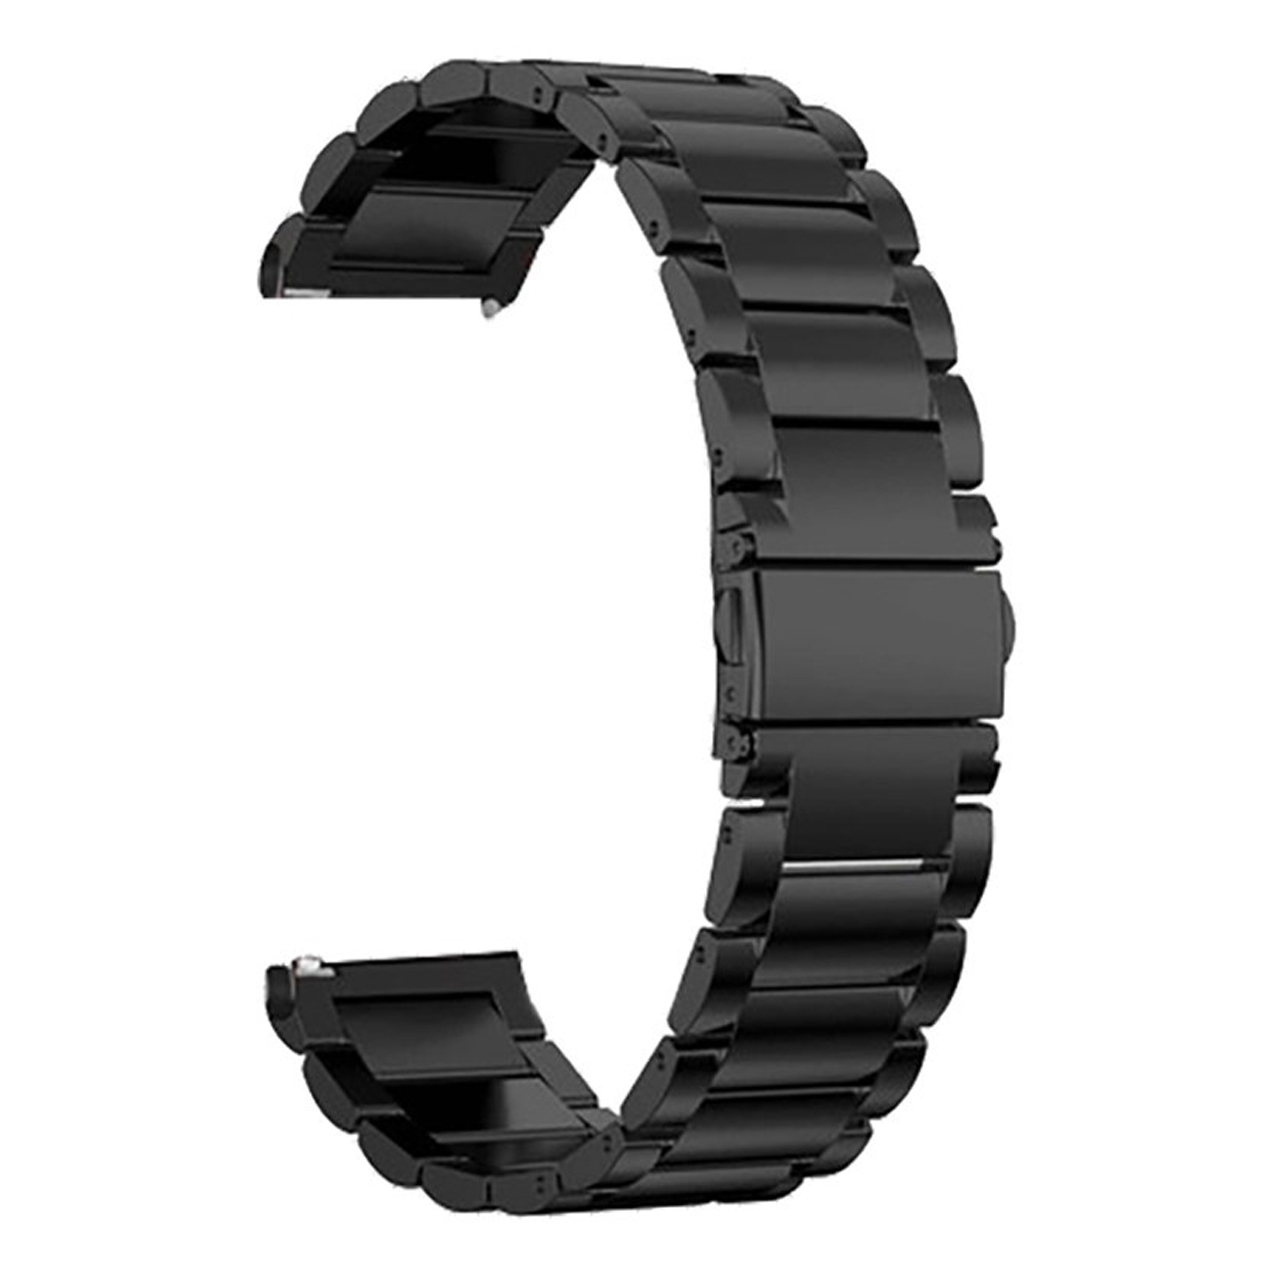 بند ساعت هوشمند مدل Bead3 مناسب برای ساعت هوشمند سامسونگ Galaxy Watch 46mm